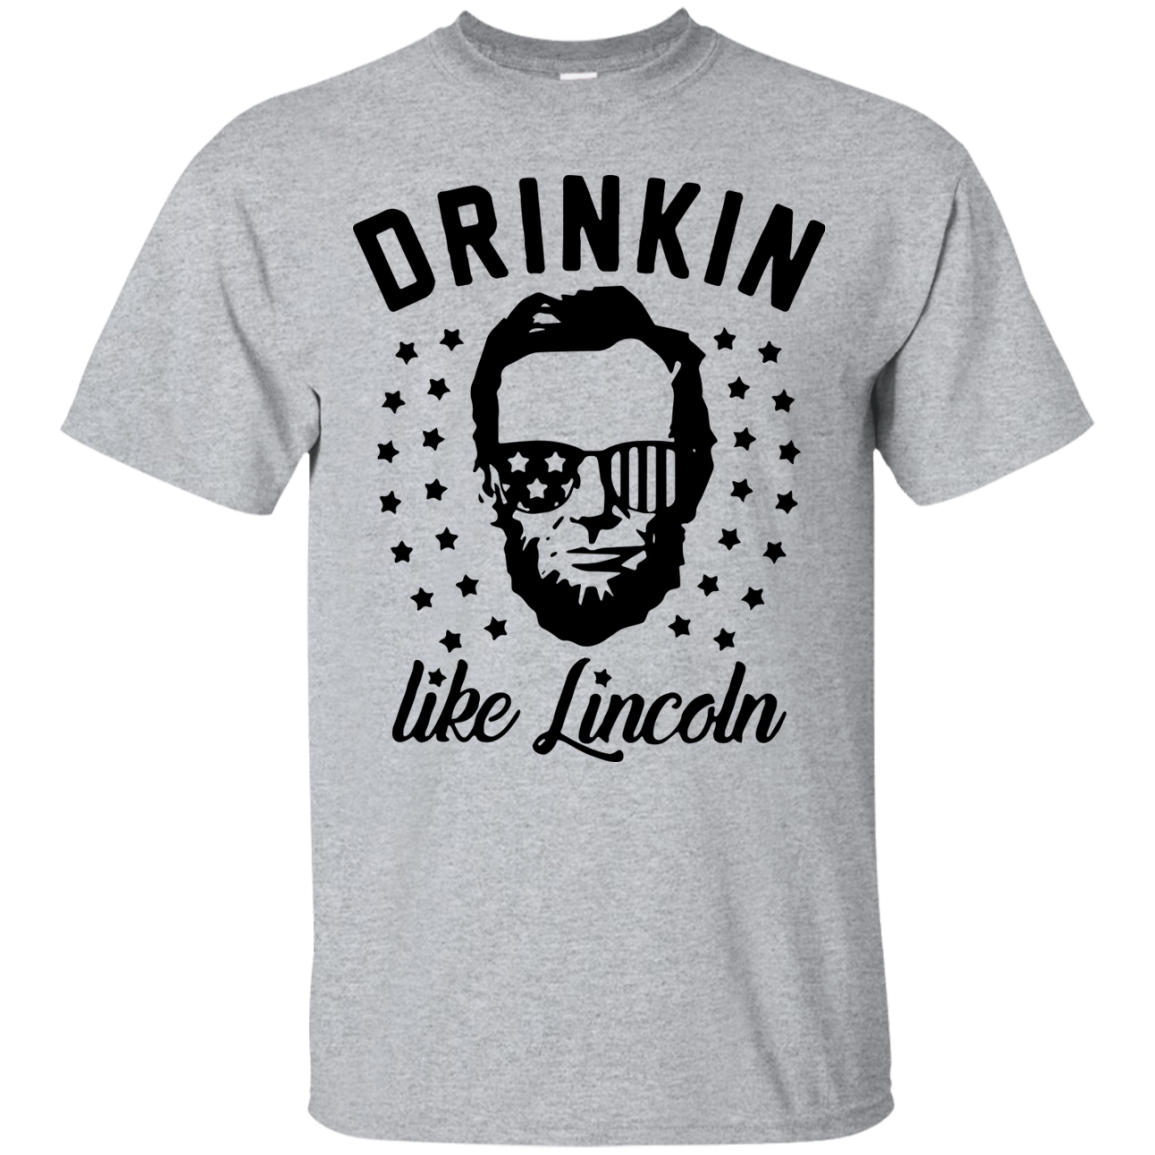 Drinkin Like Lincoln Star shirt, sweater, tank